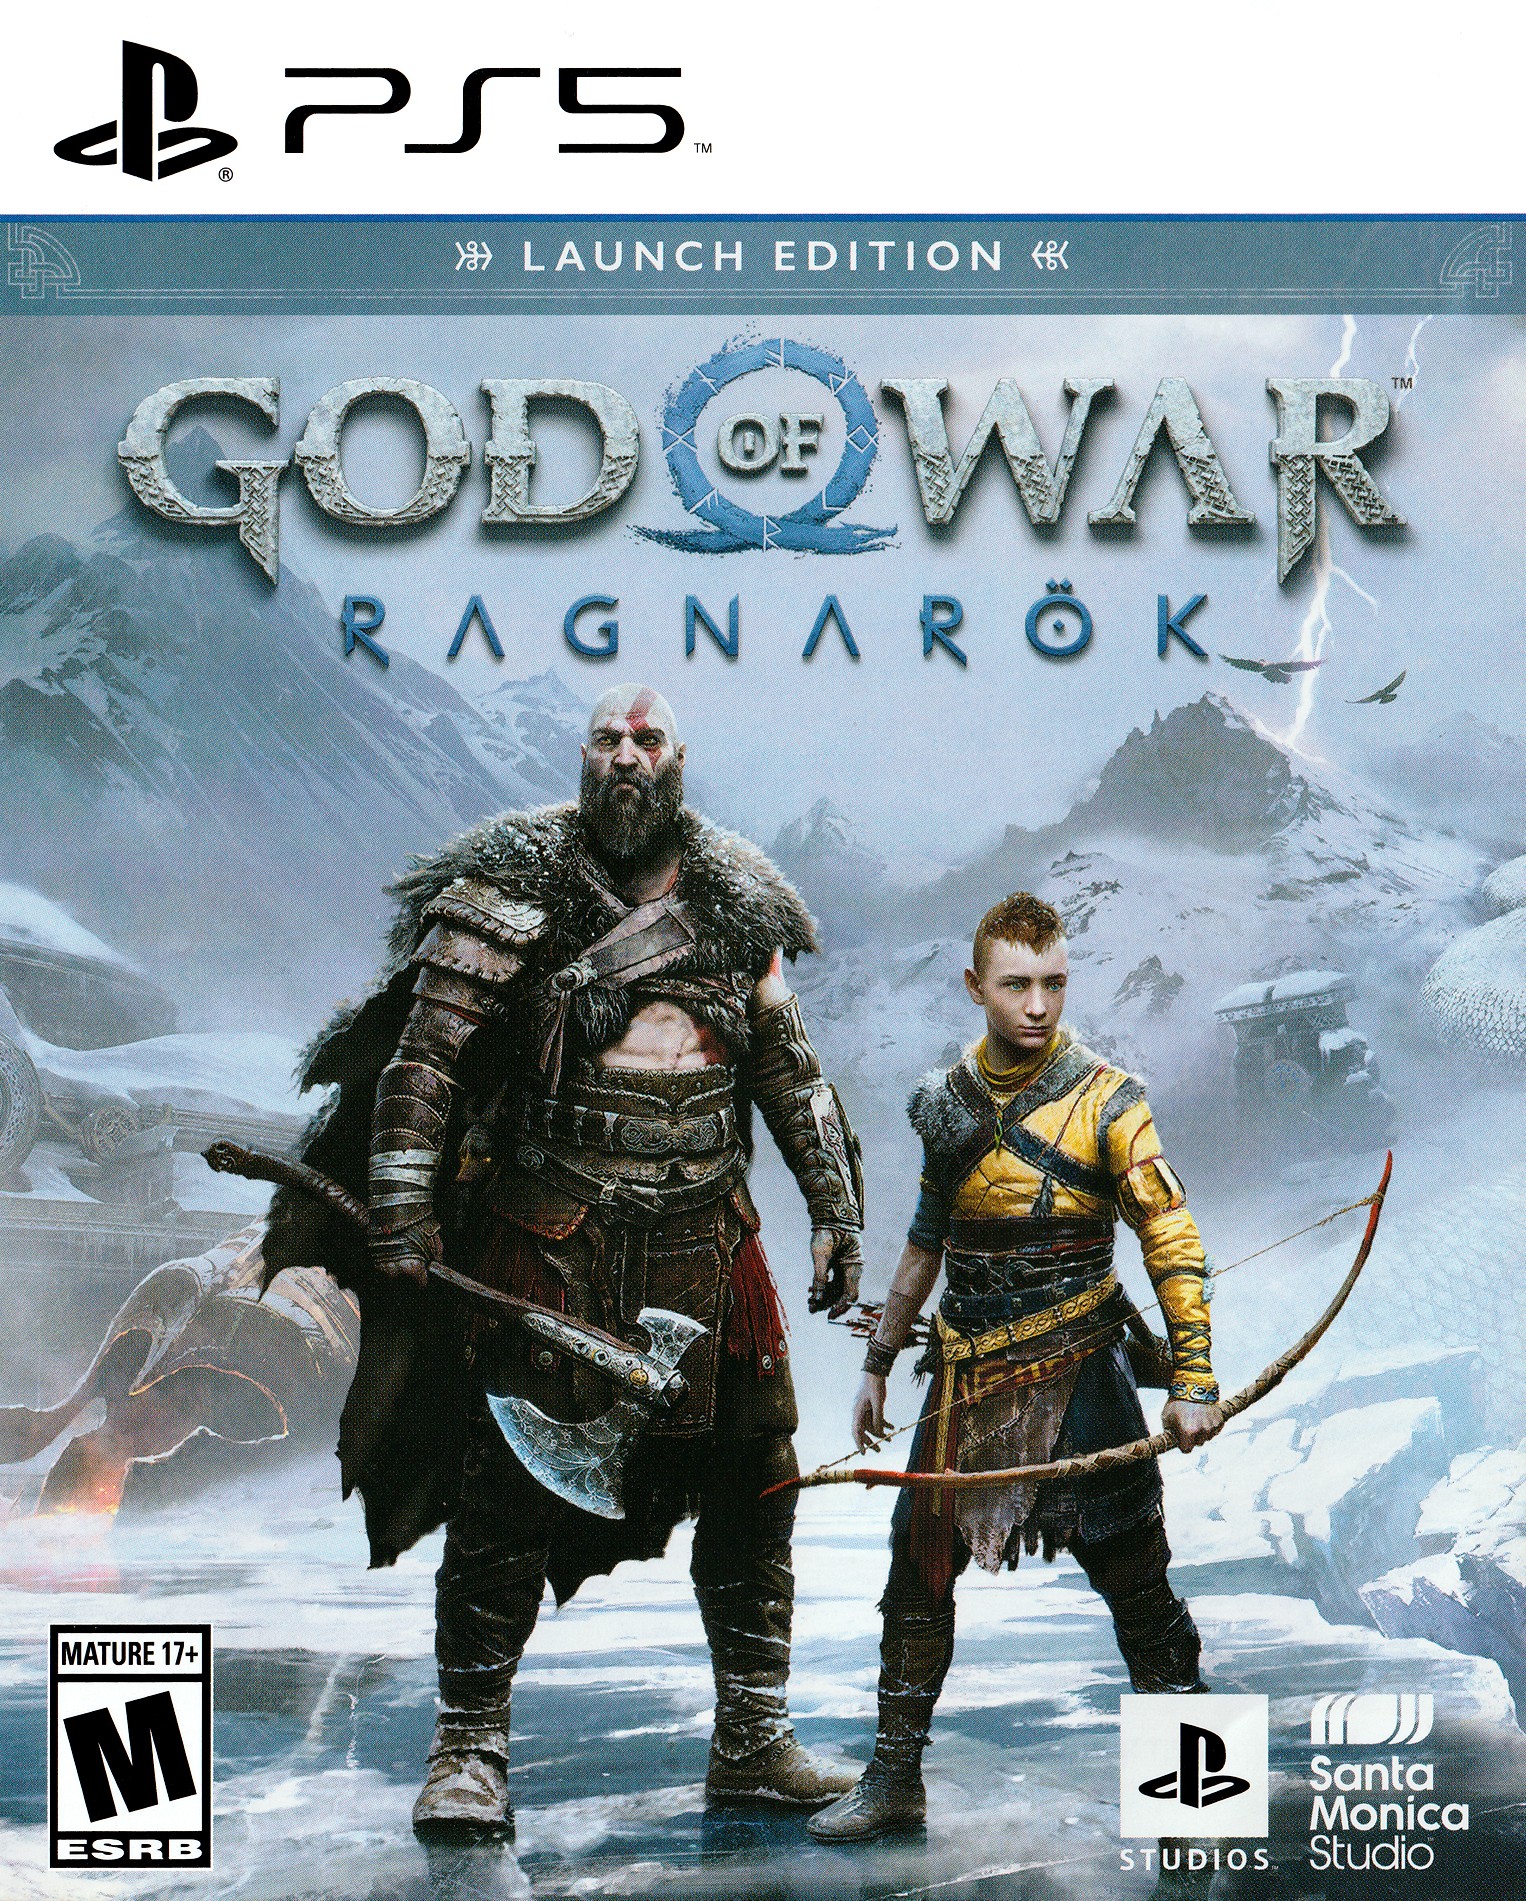 'God of War: Ragnarok'